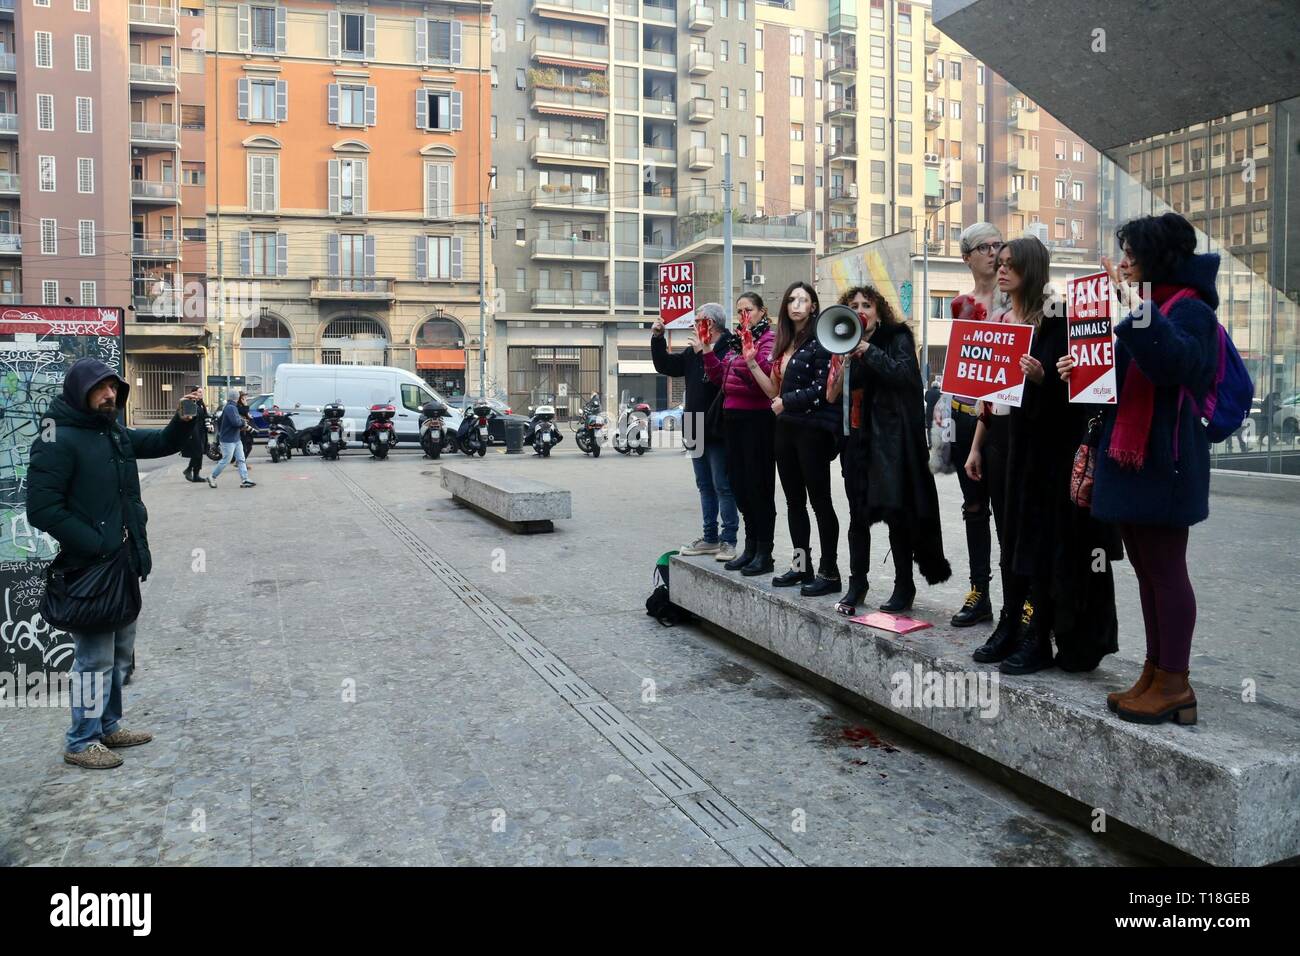 Un flash mob se reúne fuera de la entrada del Max Mara Fashion Show en una demostración de protesta contra el uso de pieles por la marca donde: Milán, Italia cuando: 21 Feb 2019 Crédito: IPA/WENN.com **Sólo disponible para su publicación en el Reino Unido, Estados Unidos, Alemania, Austria, Suiza** Foto de stock